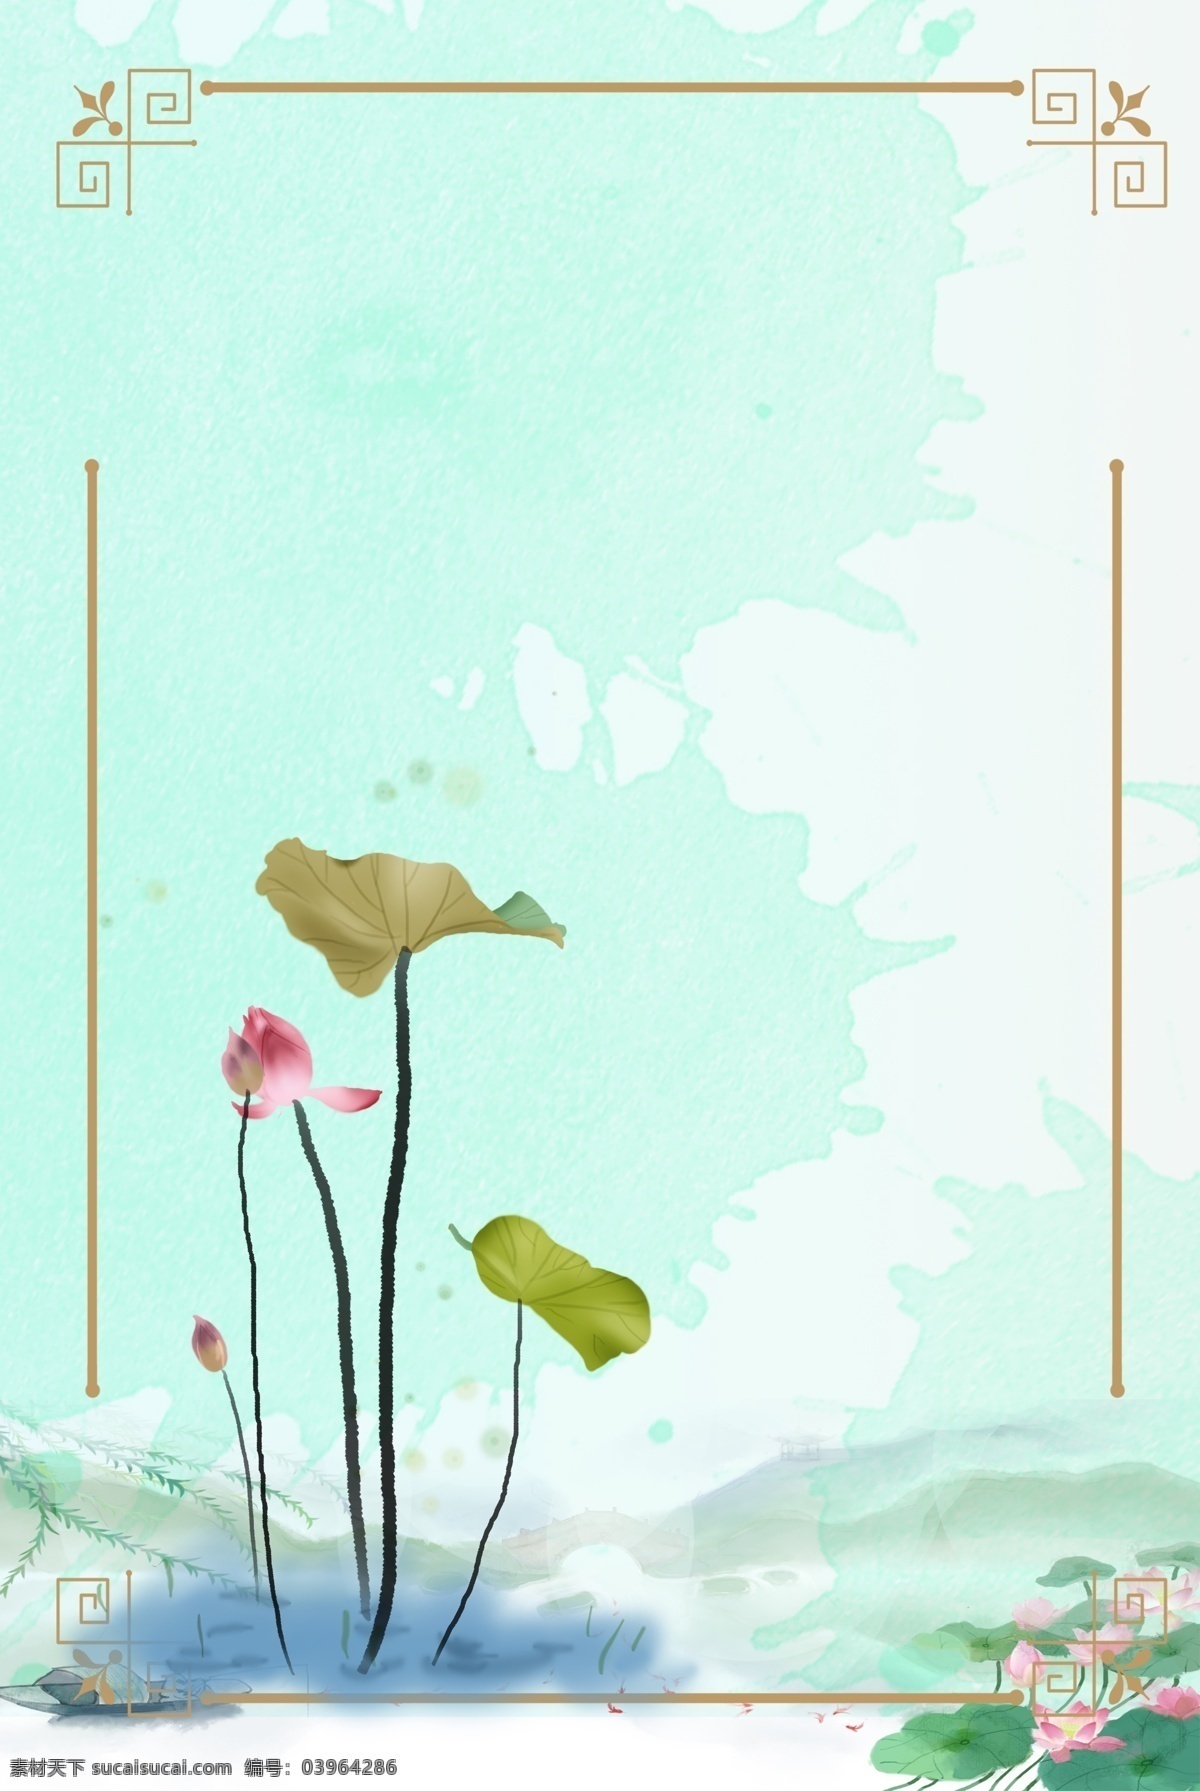 夏天 中国 风 背景 中国风 传统 古风 夏季 插图 插画 昆虫 植物 水墨 淡彩 绿色 荷叶 荷花 蜻蜓